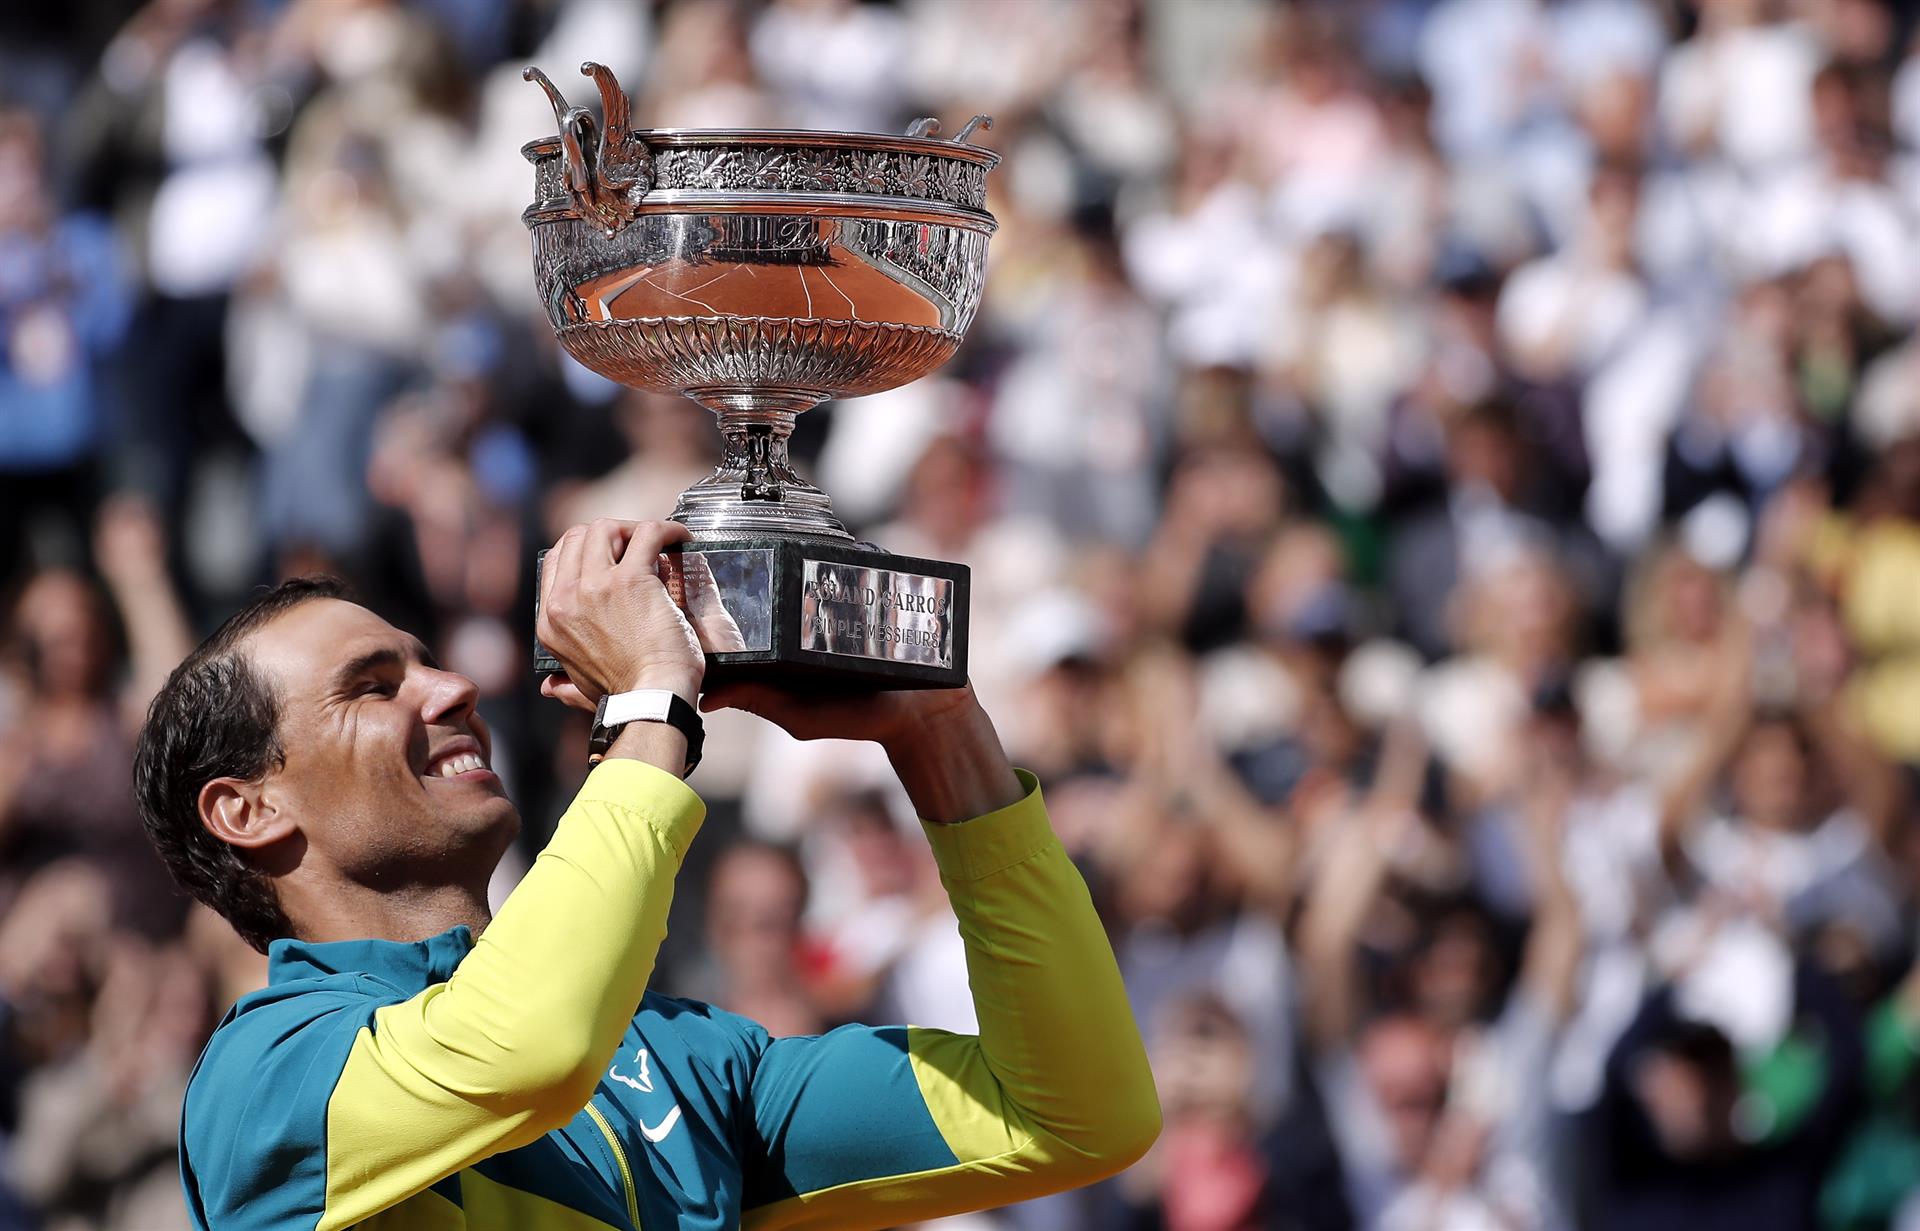 Rafa Nadal arrasa a Casper Ruud (6-3, 6-3, 6-0) y conquista su impresionante 14 Roland Garros y su 22 Grand Slam